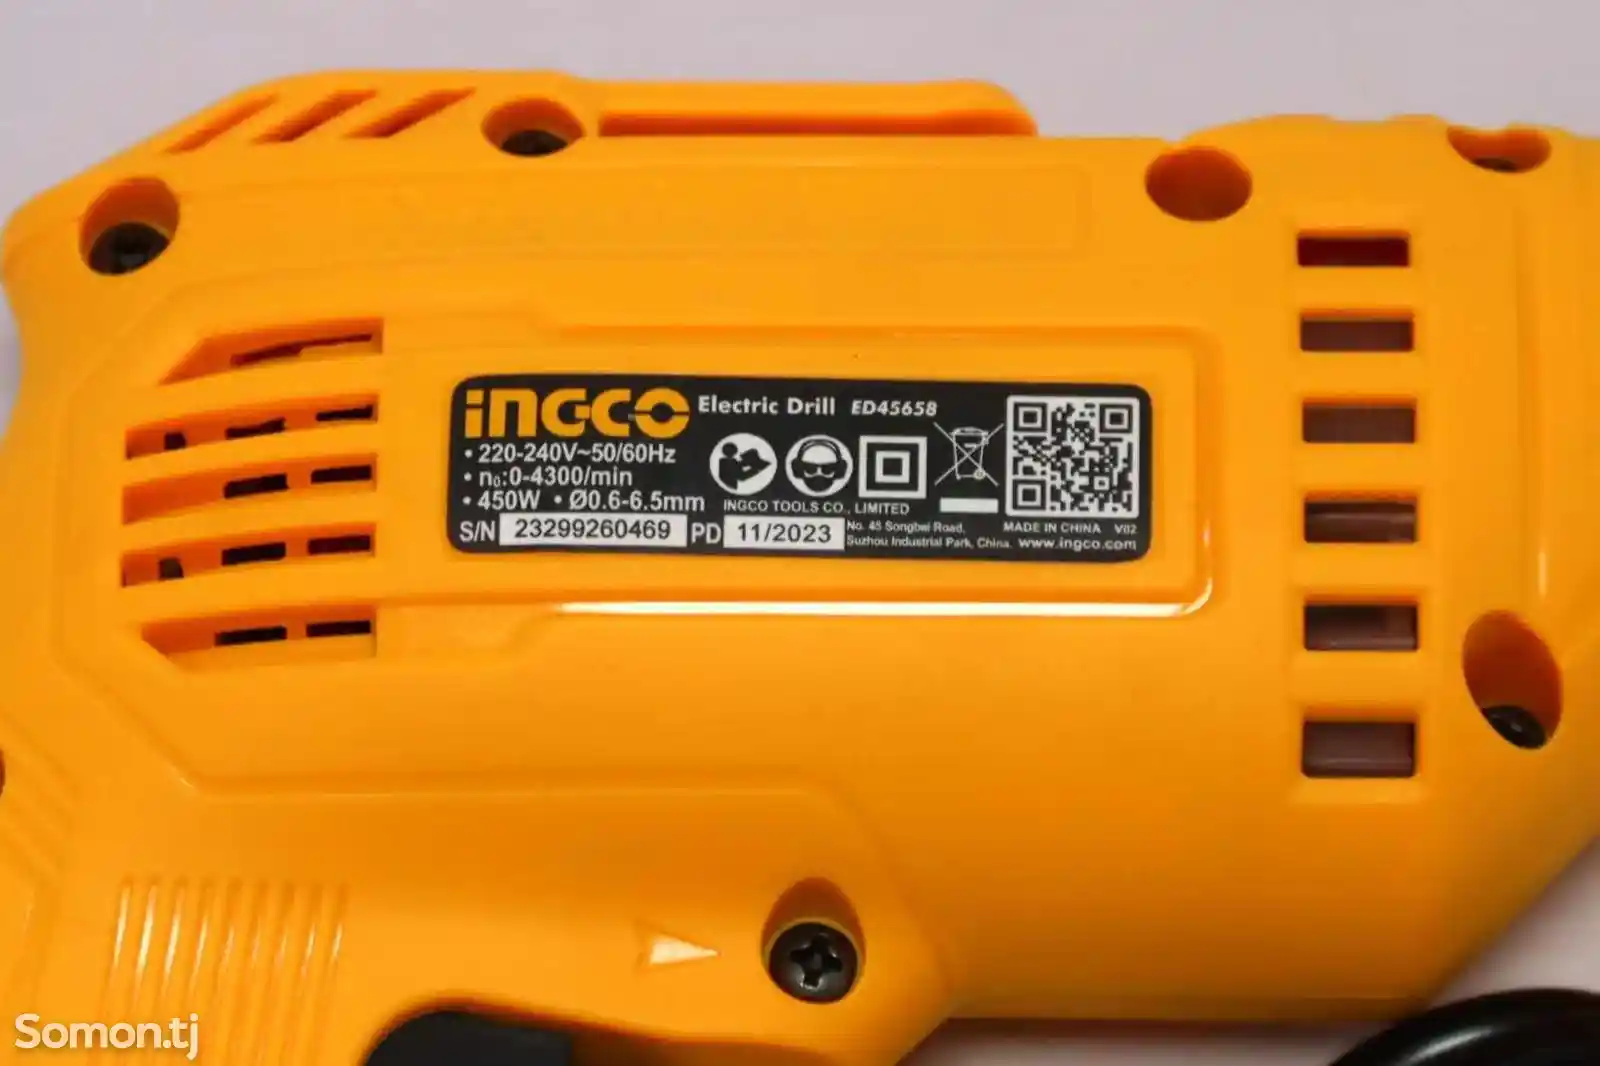 Дрель электрическая Ingco 450w Ed45658-3